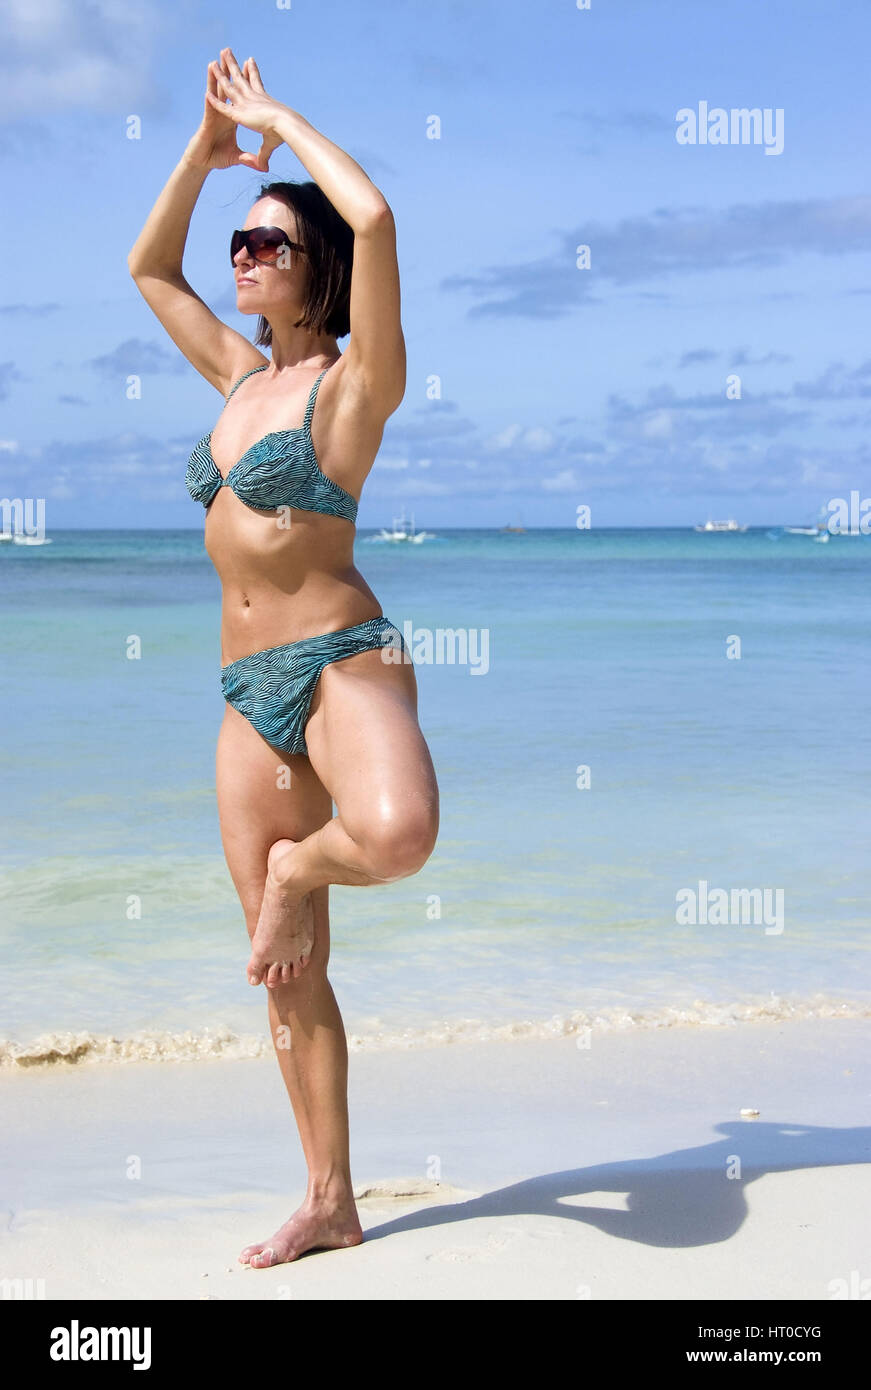 Frau macht Joga am Sandstrand - woman does yoga on the beach Stock Photo